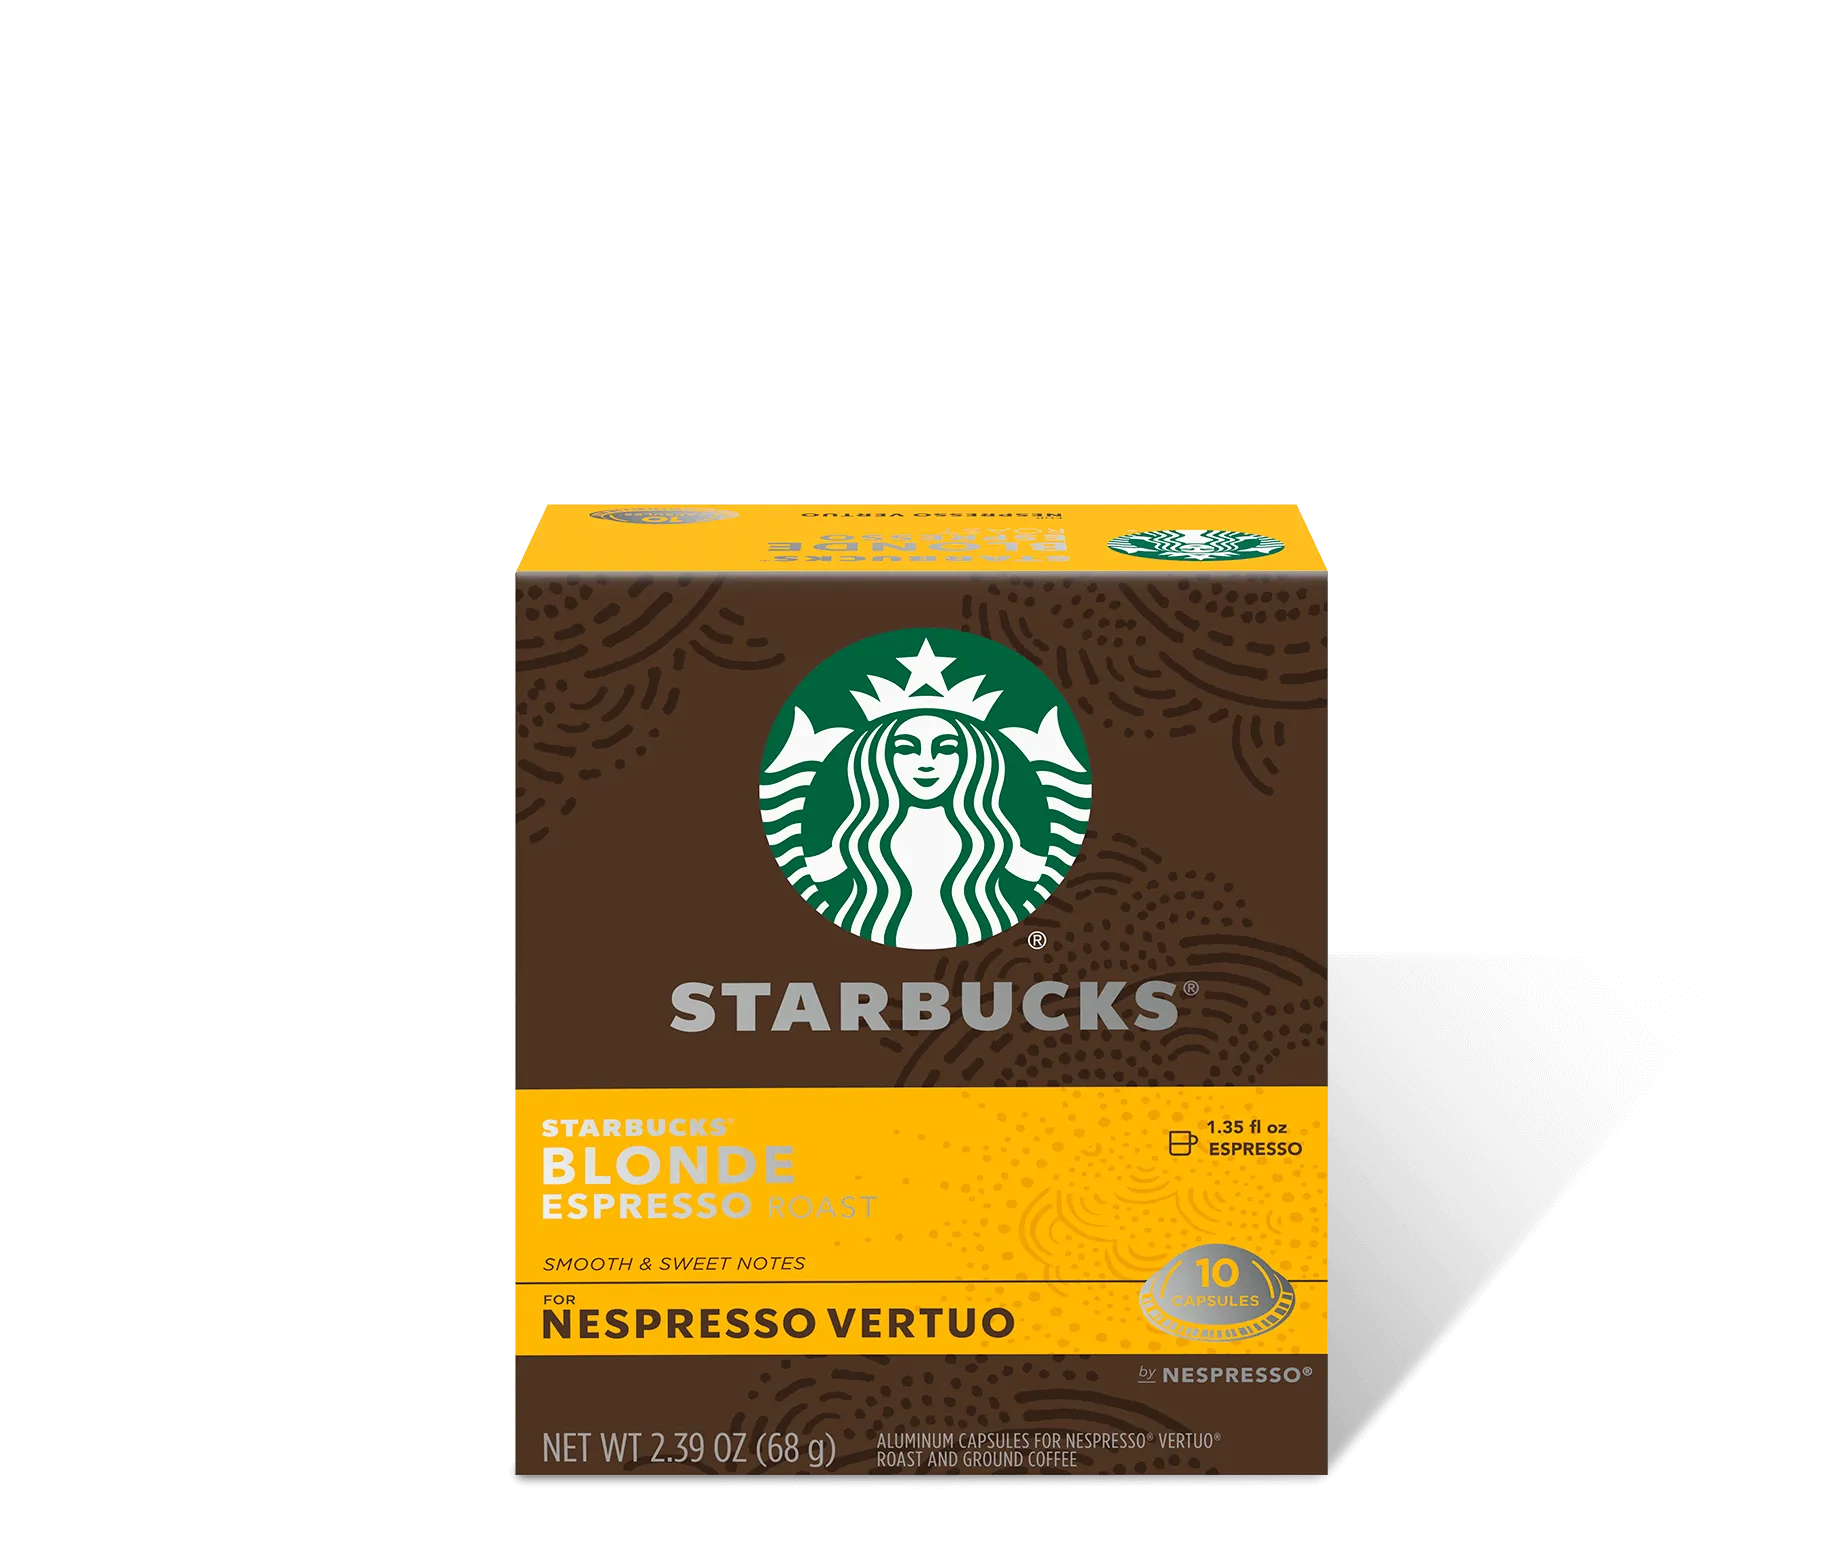 Starbucks by Nespresso Colombia – Alvin Bunk